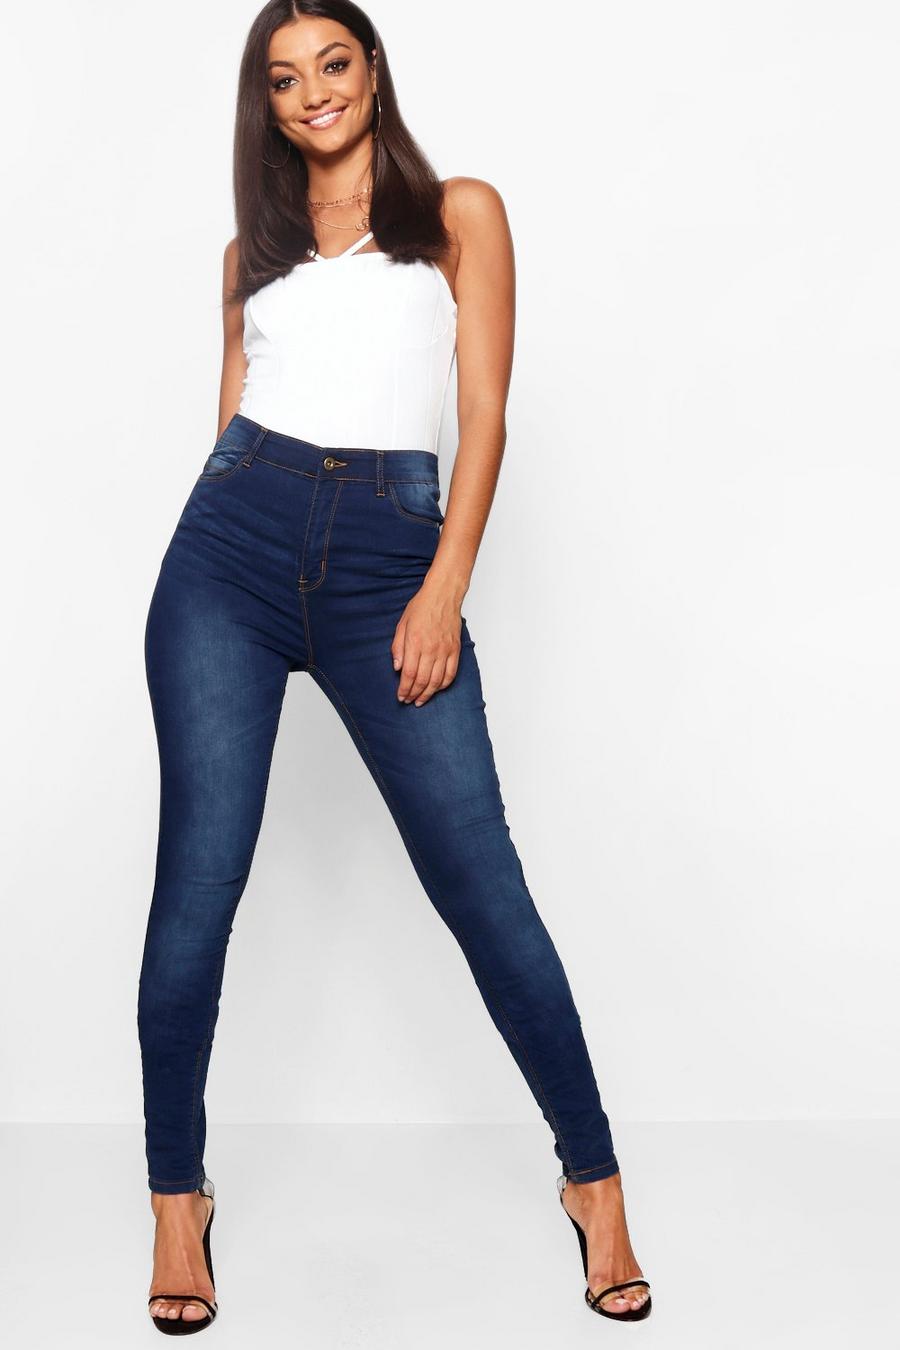 כחול כהה סקיני ג'ינס mid rise לנשים גבוהות